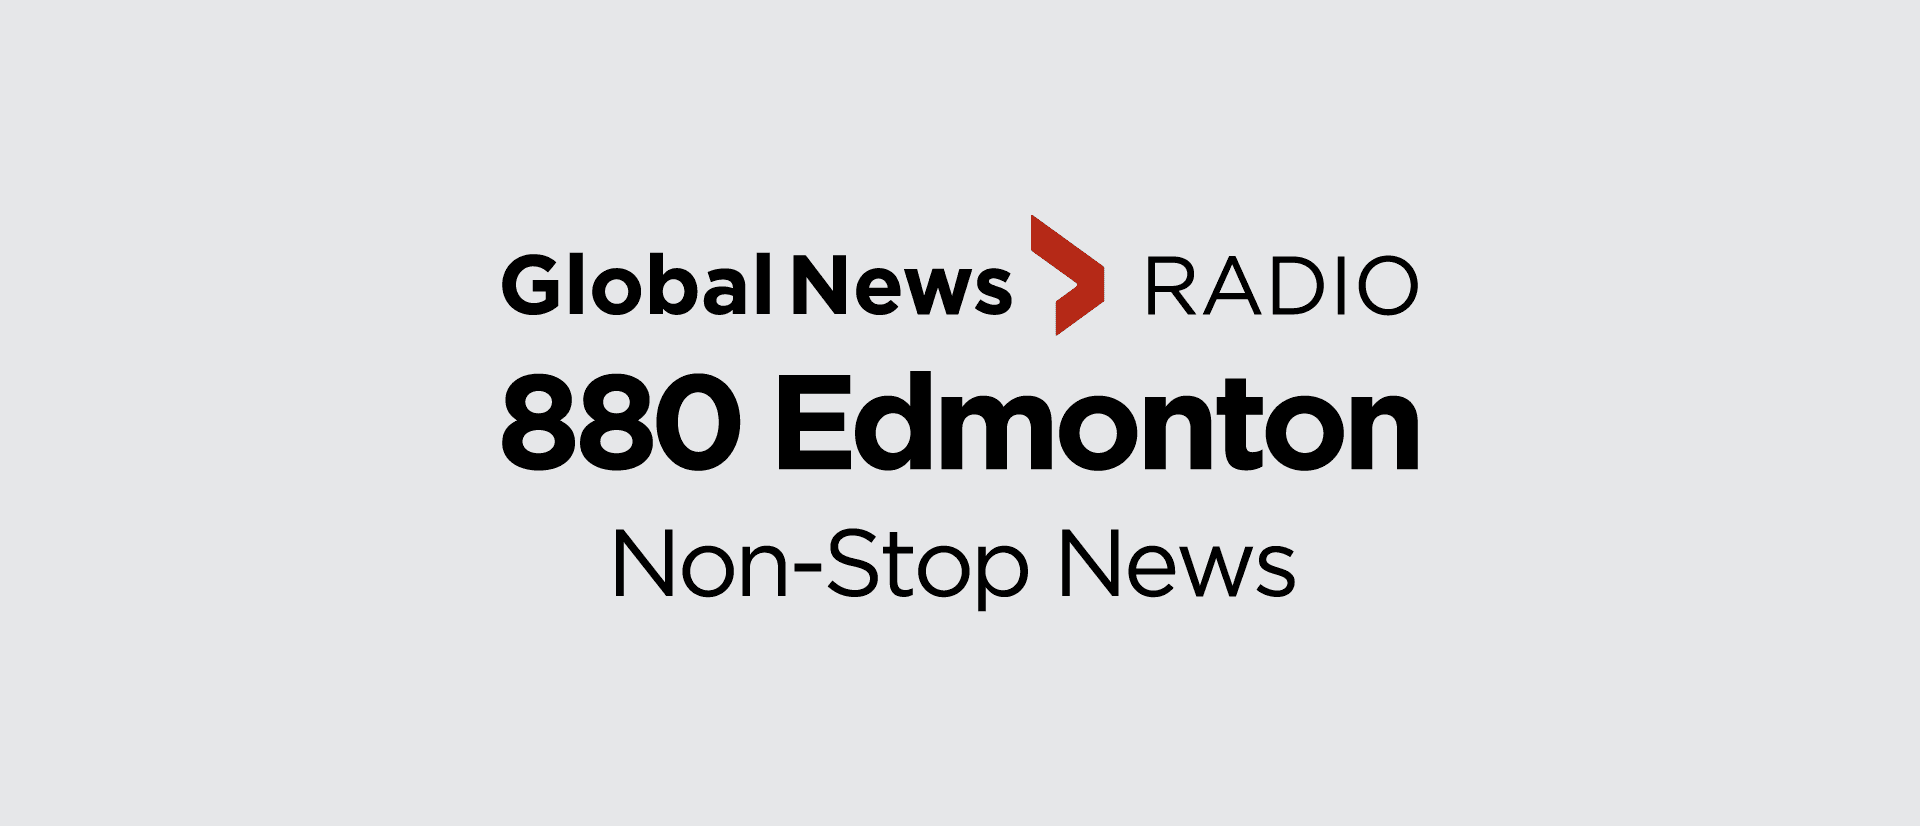 880 Edmonton Global